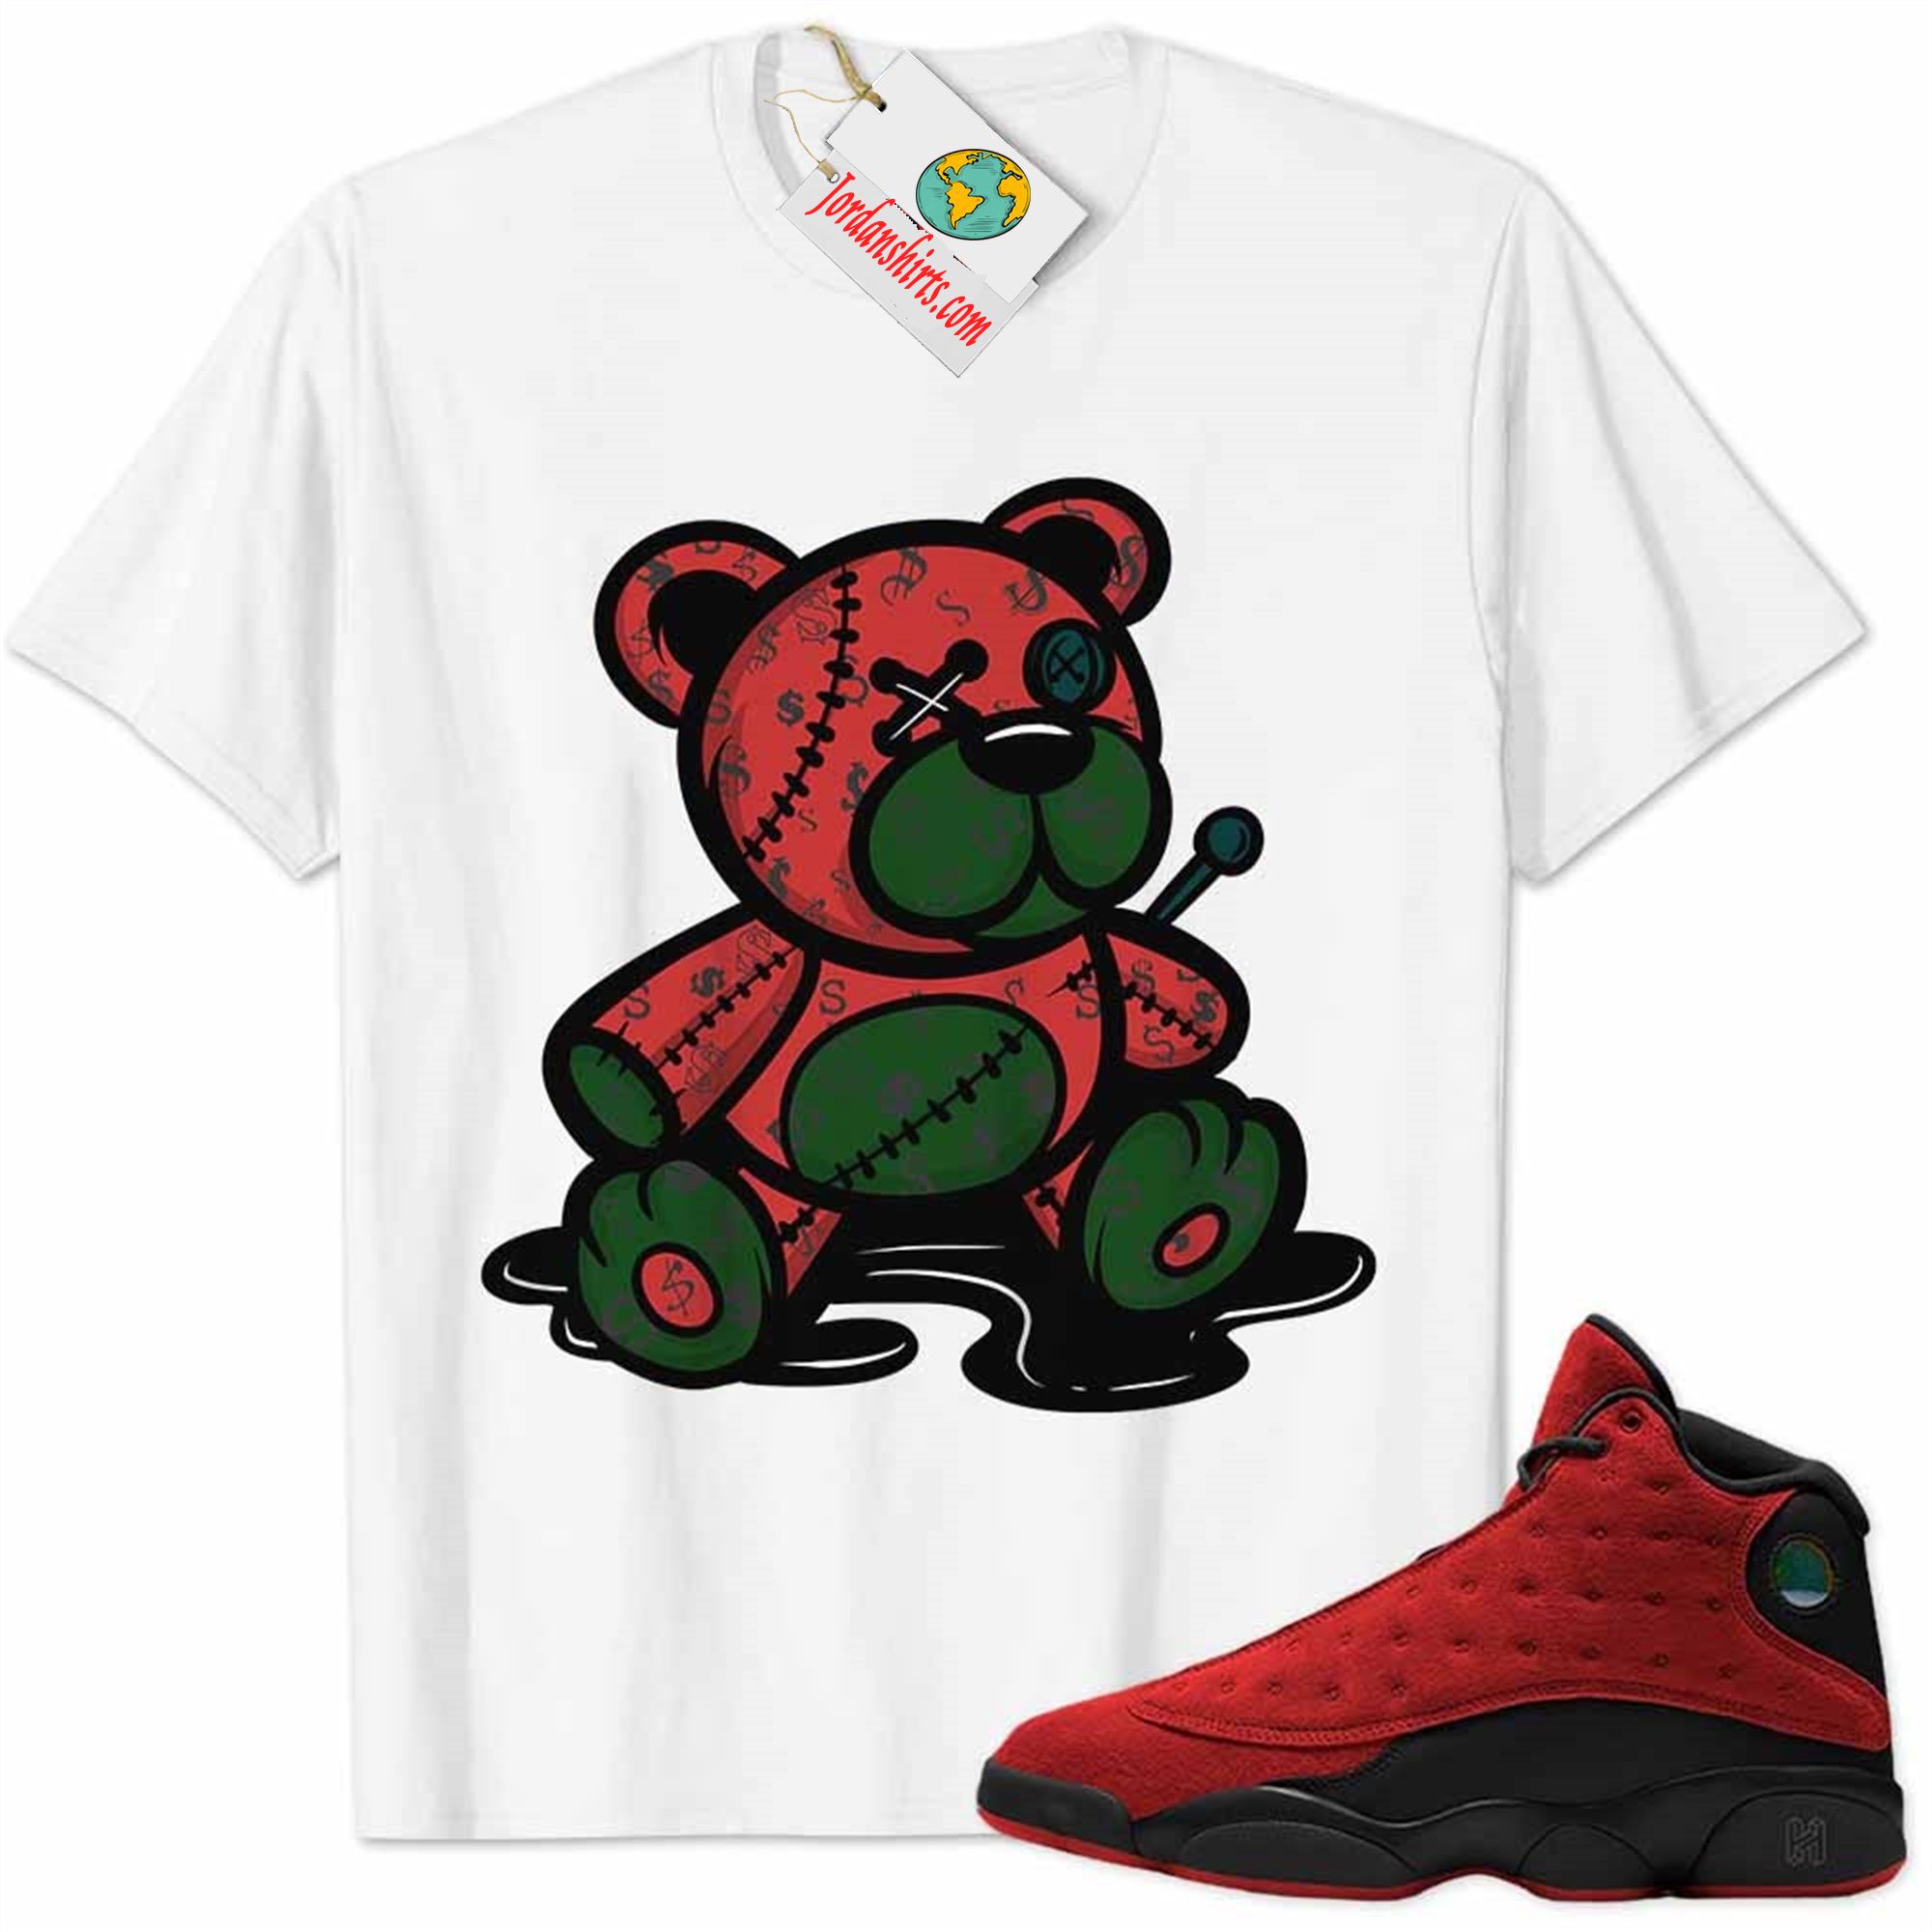 Jordan 13 Shirt, Jordan 13 Reverse Bred Shirt Teddy Bear All Money In White Full Size Up To 5xl